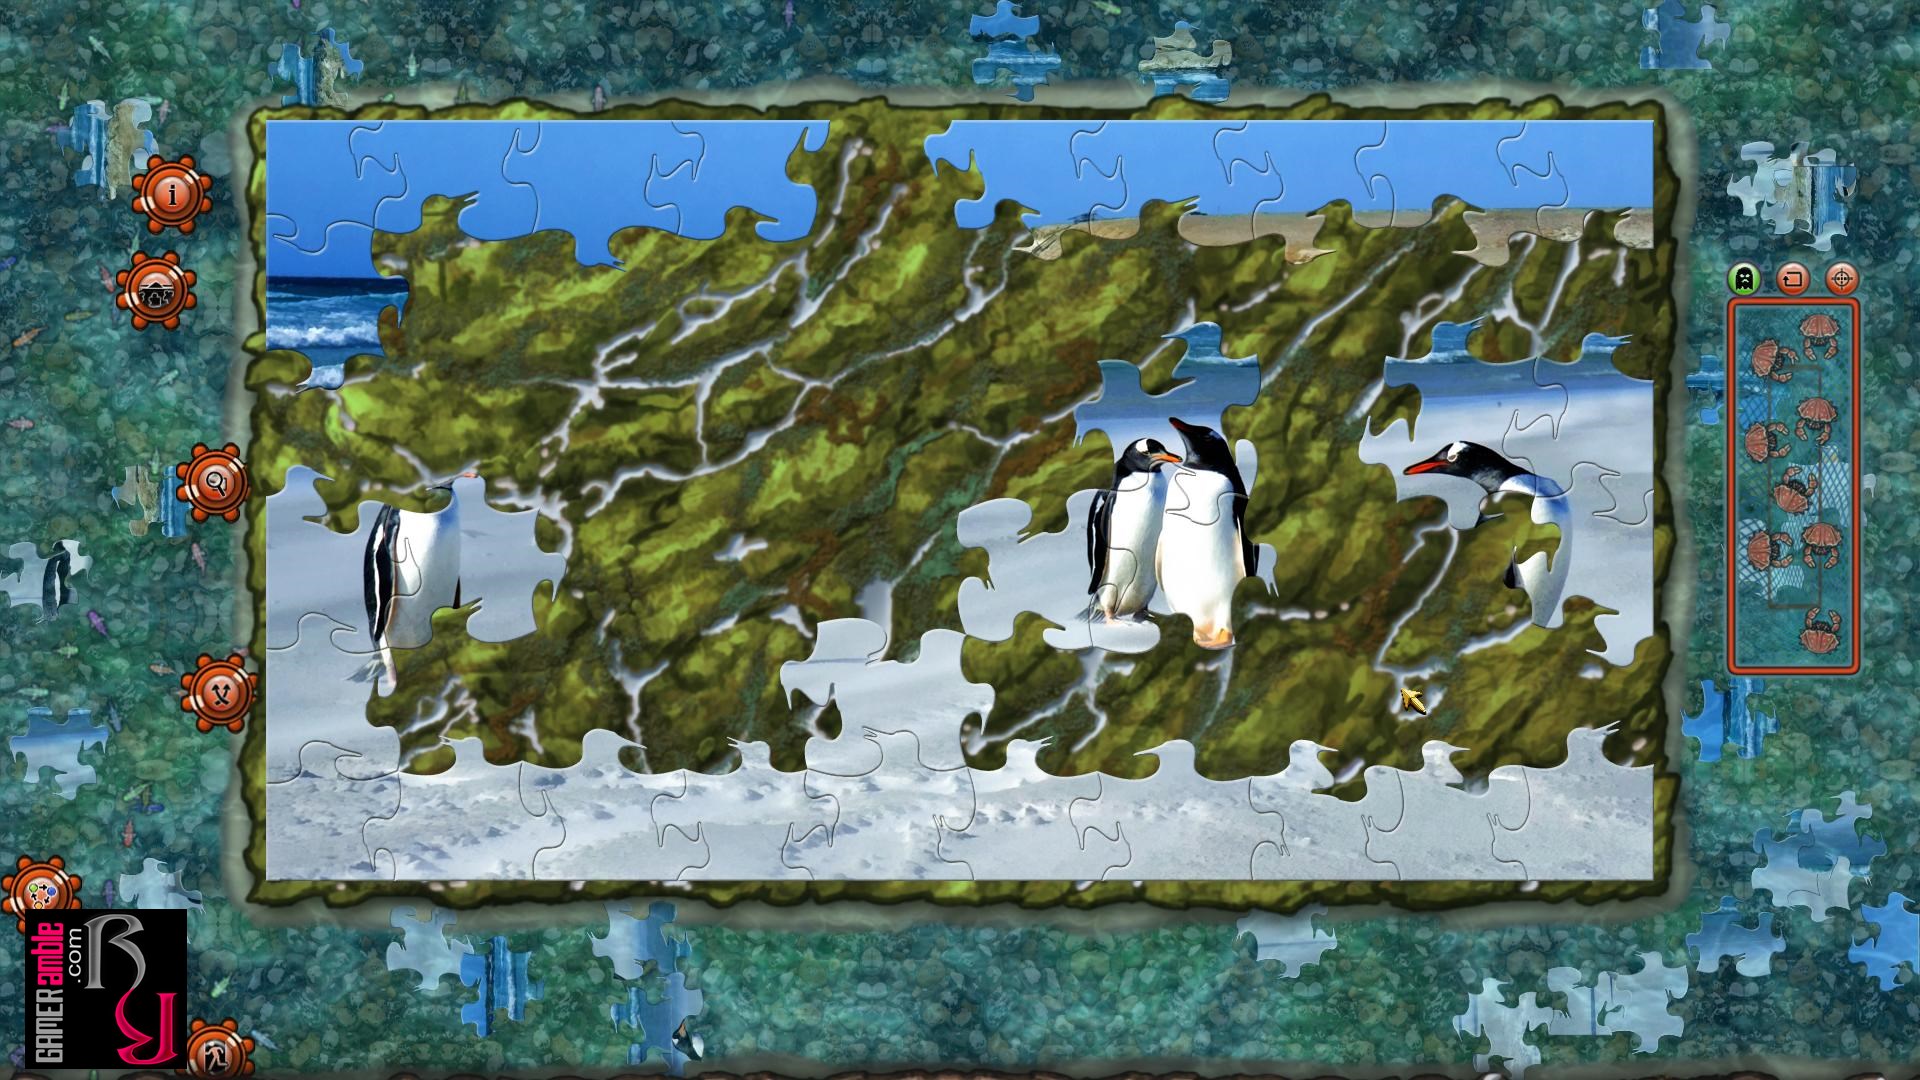 Pixel Puzzles 2: Birds HD wallpapers, Desktop wallpaper - most viewed